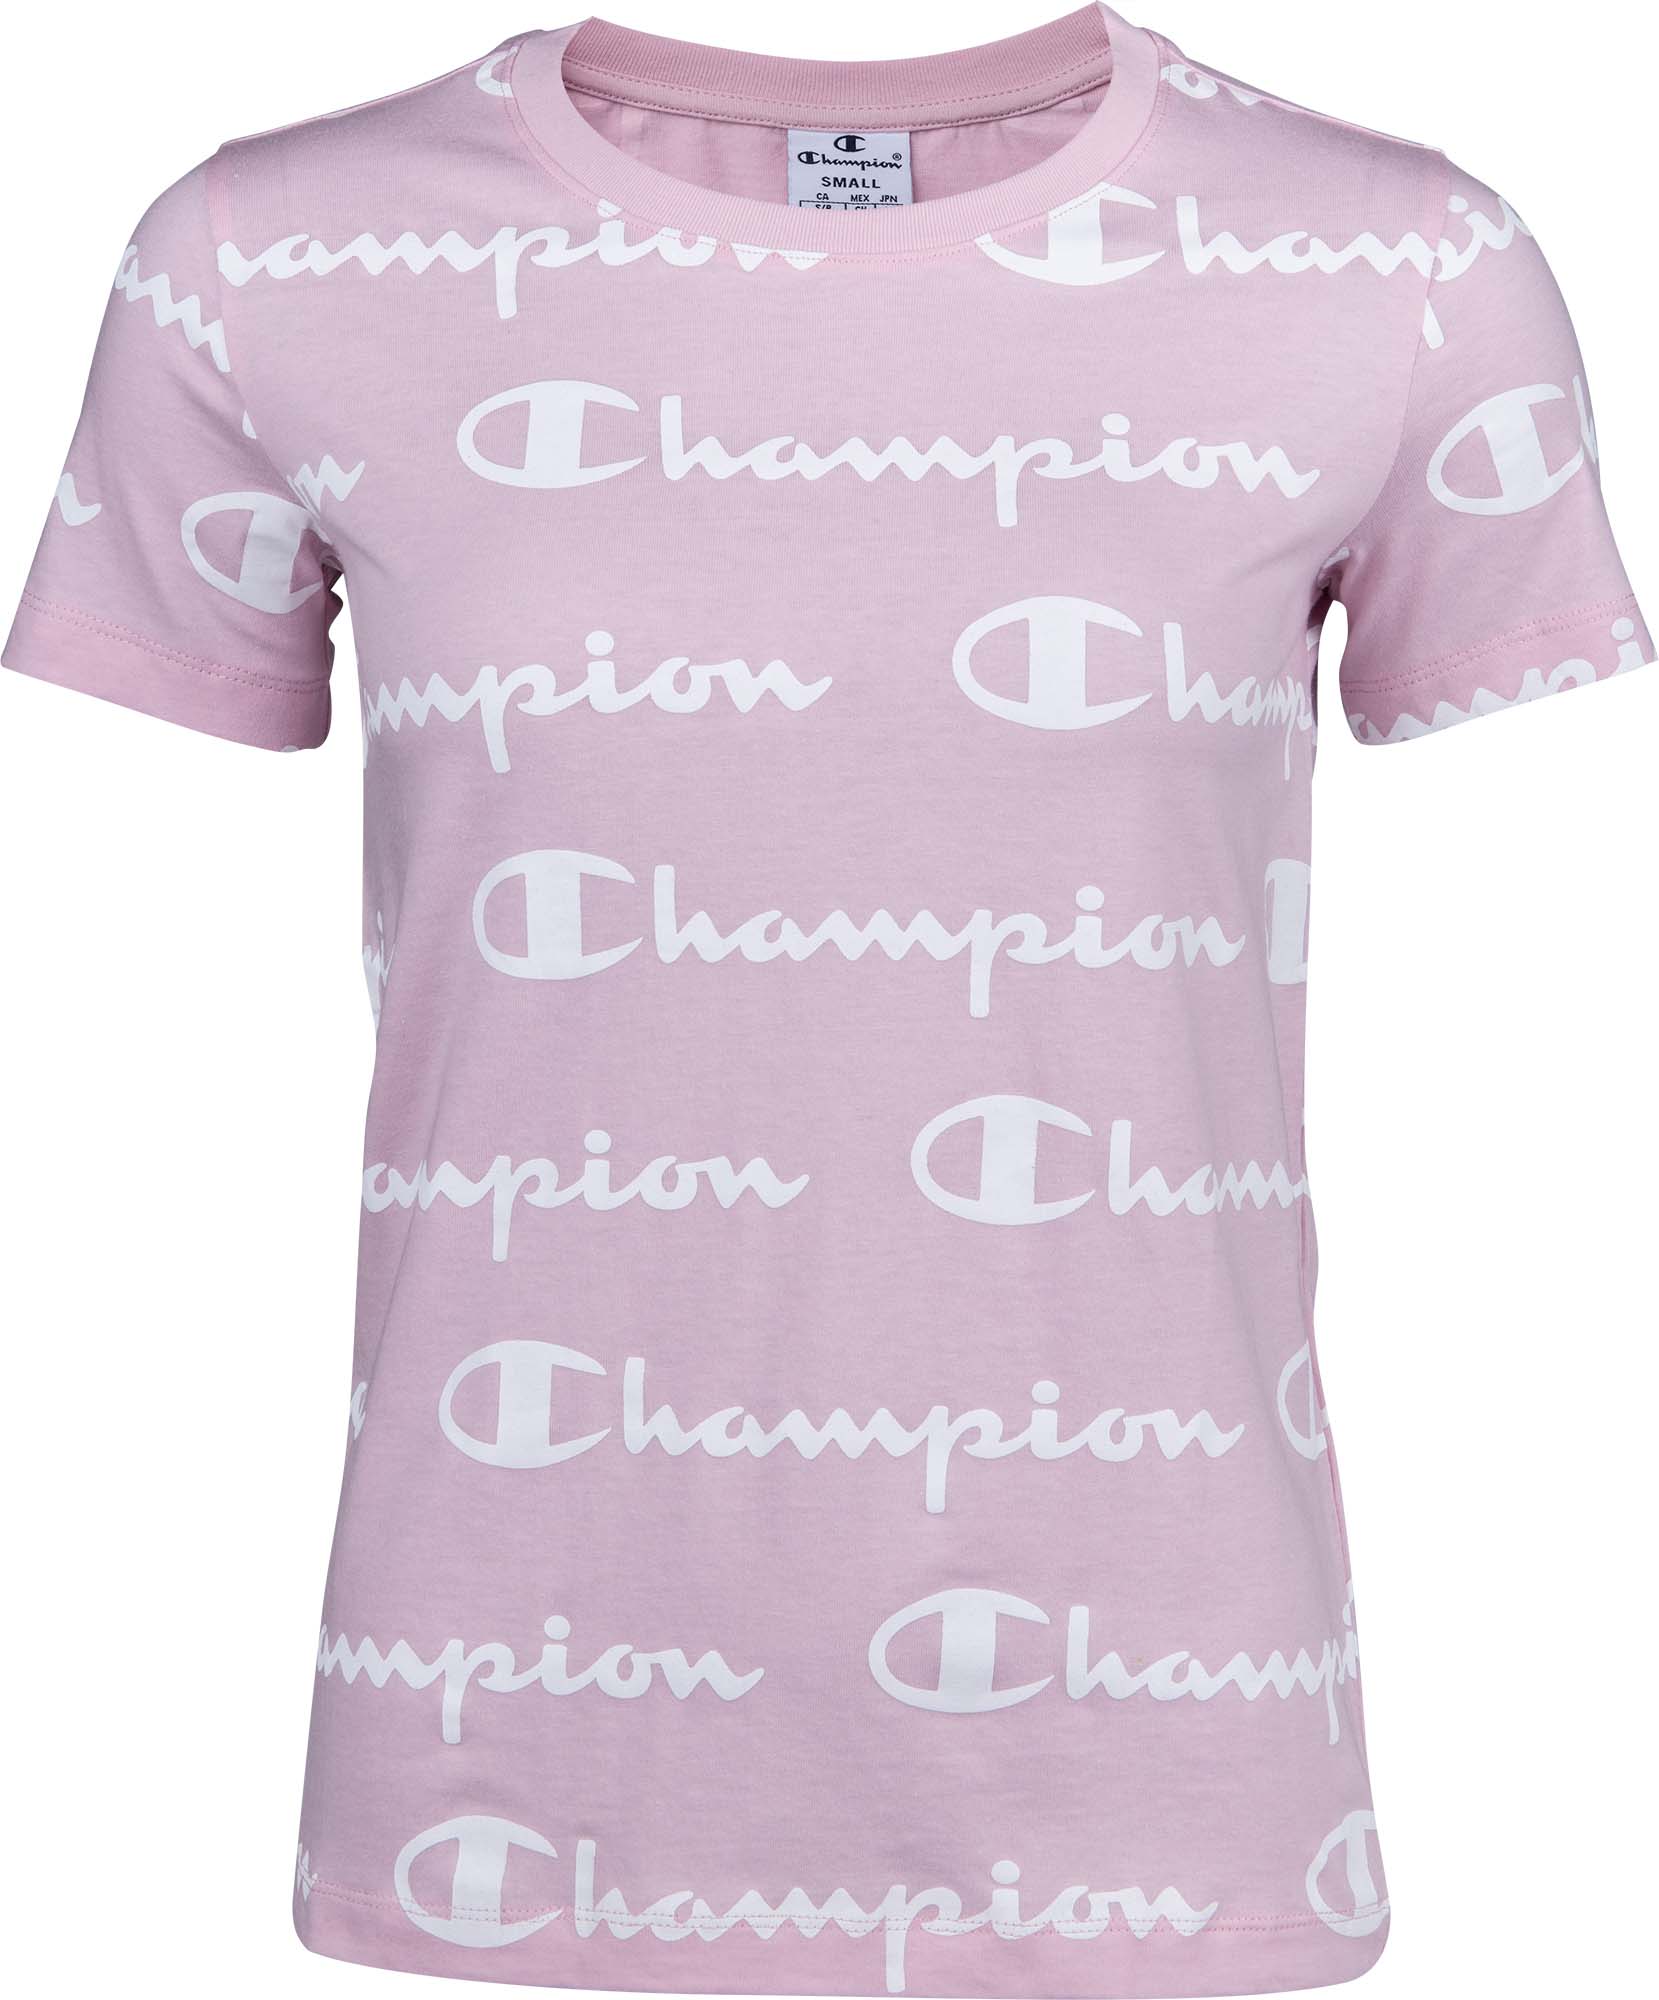 Champion Crewneck T Shirt Sportisimo Com